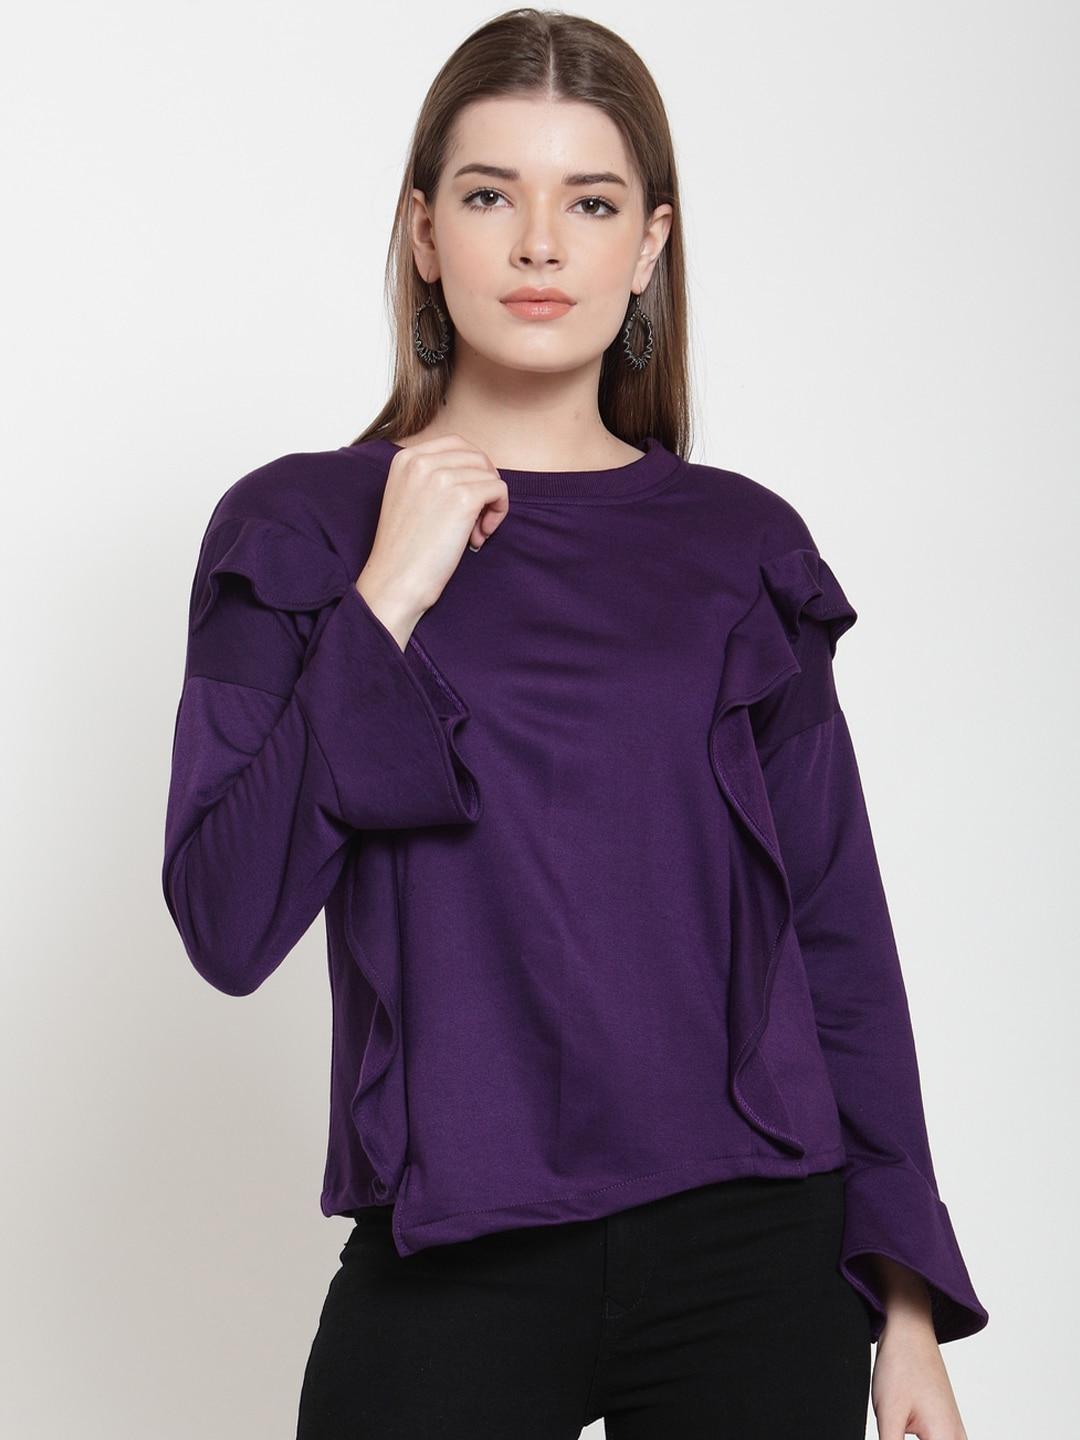 baesd-women-purple-sweatshirt